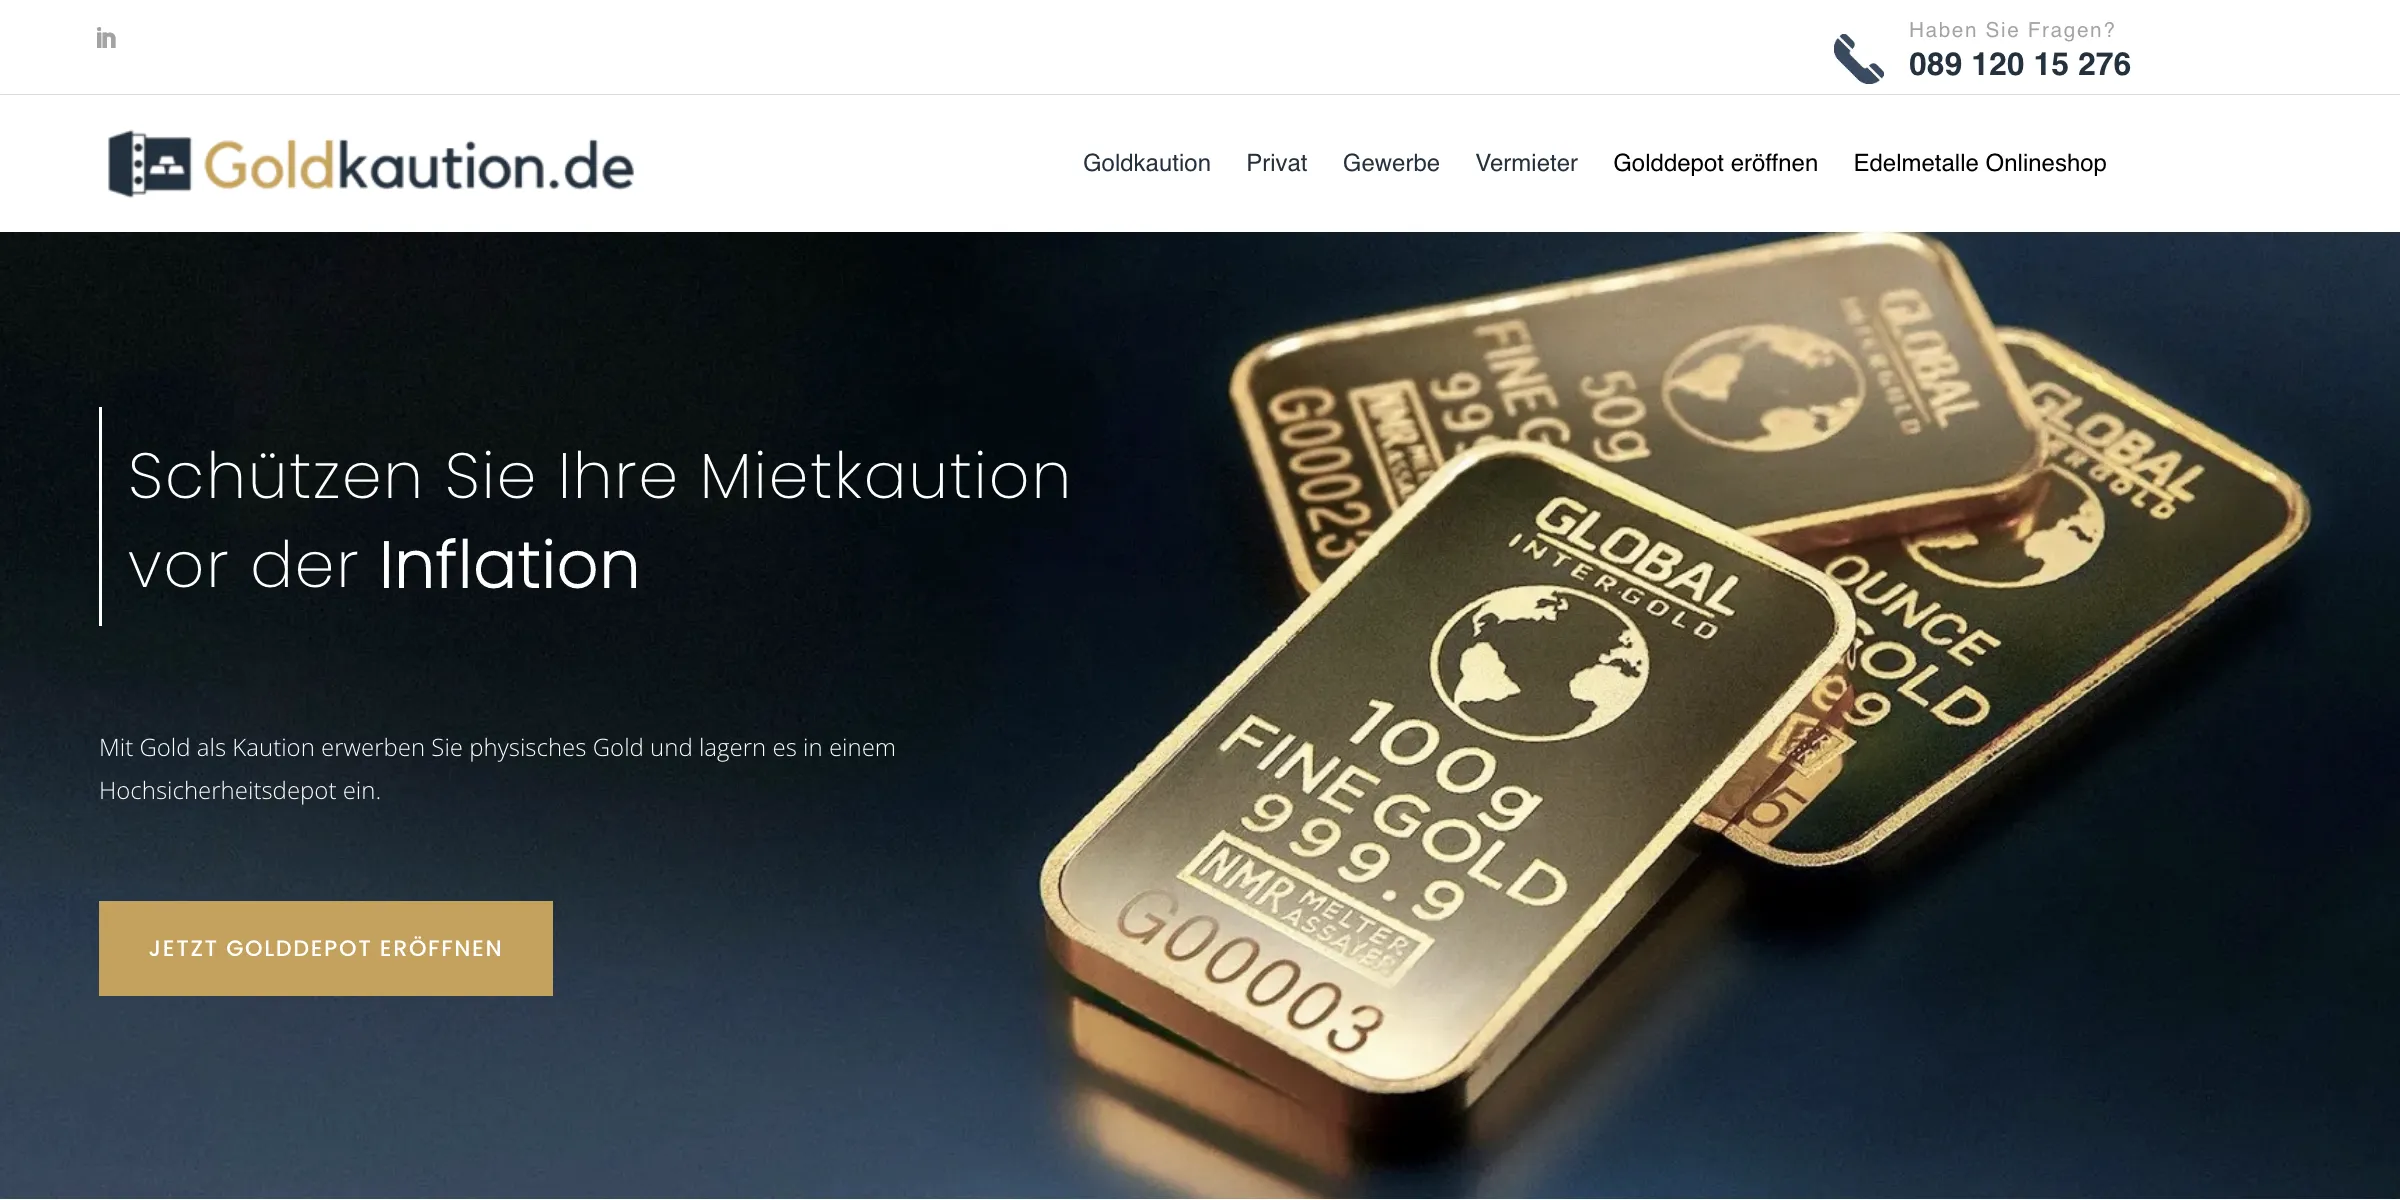 Goldkaution.de geht an den Start